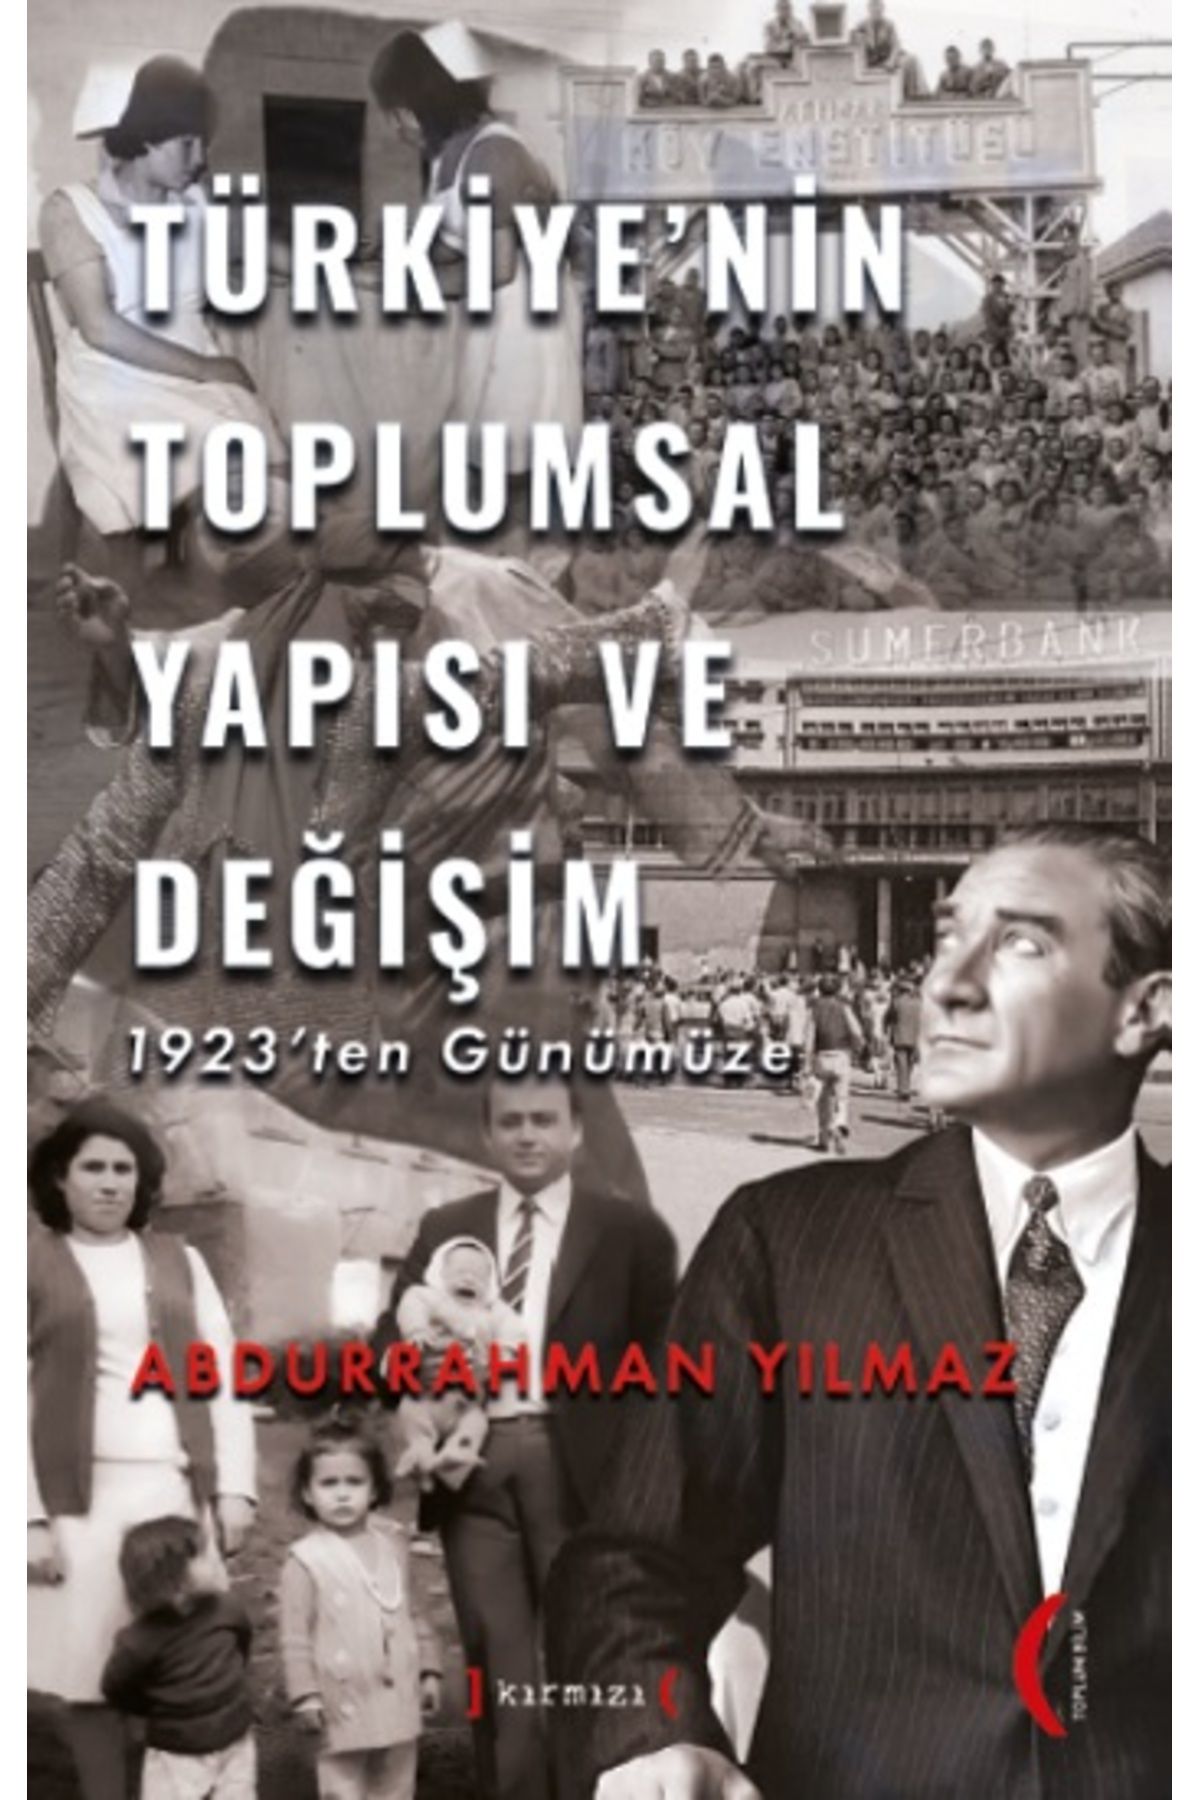 Kırmızı Yayınları Türkiye'nin Toplumsal Yapısı ve Değişim - 1923'ten Günümüze